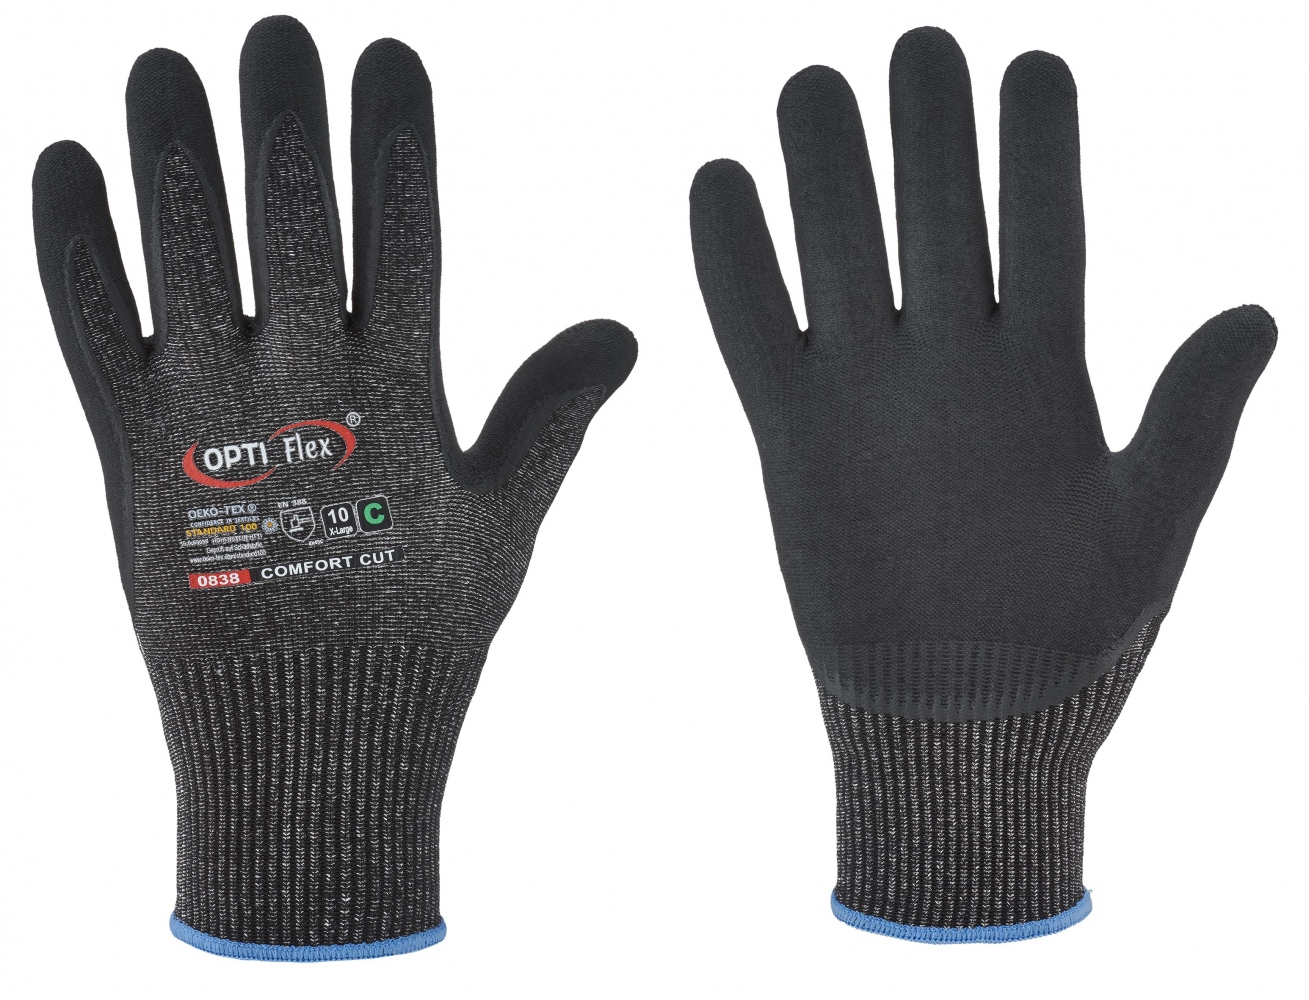 pics/Feldtmann 2016/Handschutz/neu 2021/optiflex-0838-comfort-cut-resistant-pu-coated-gloves.jpg